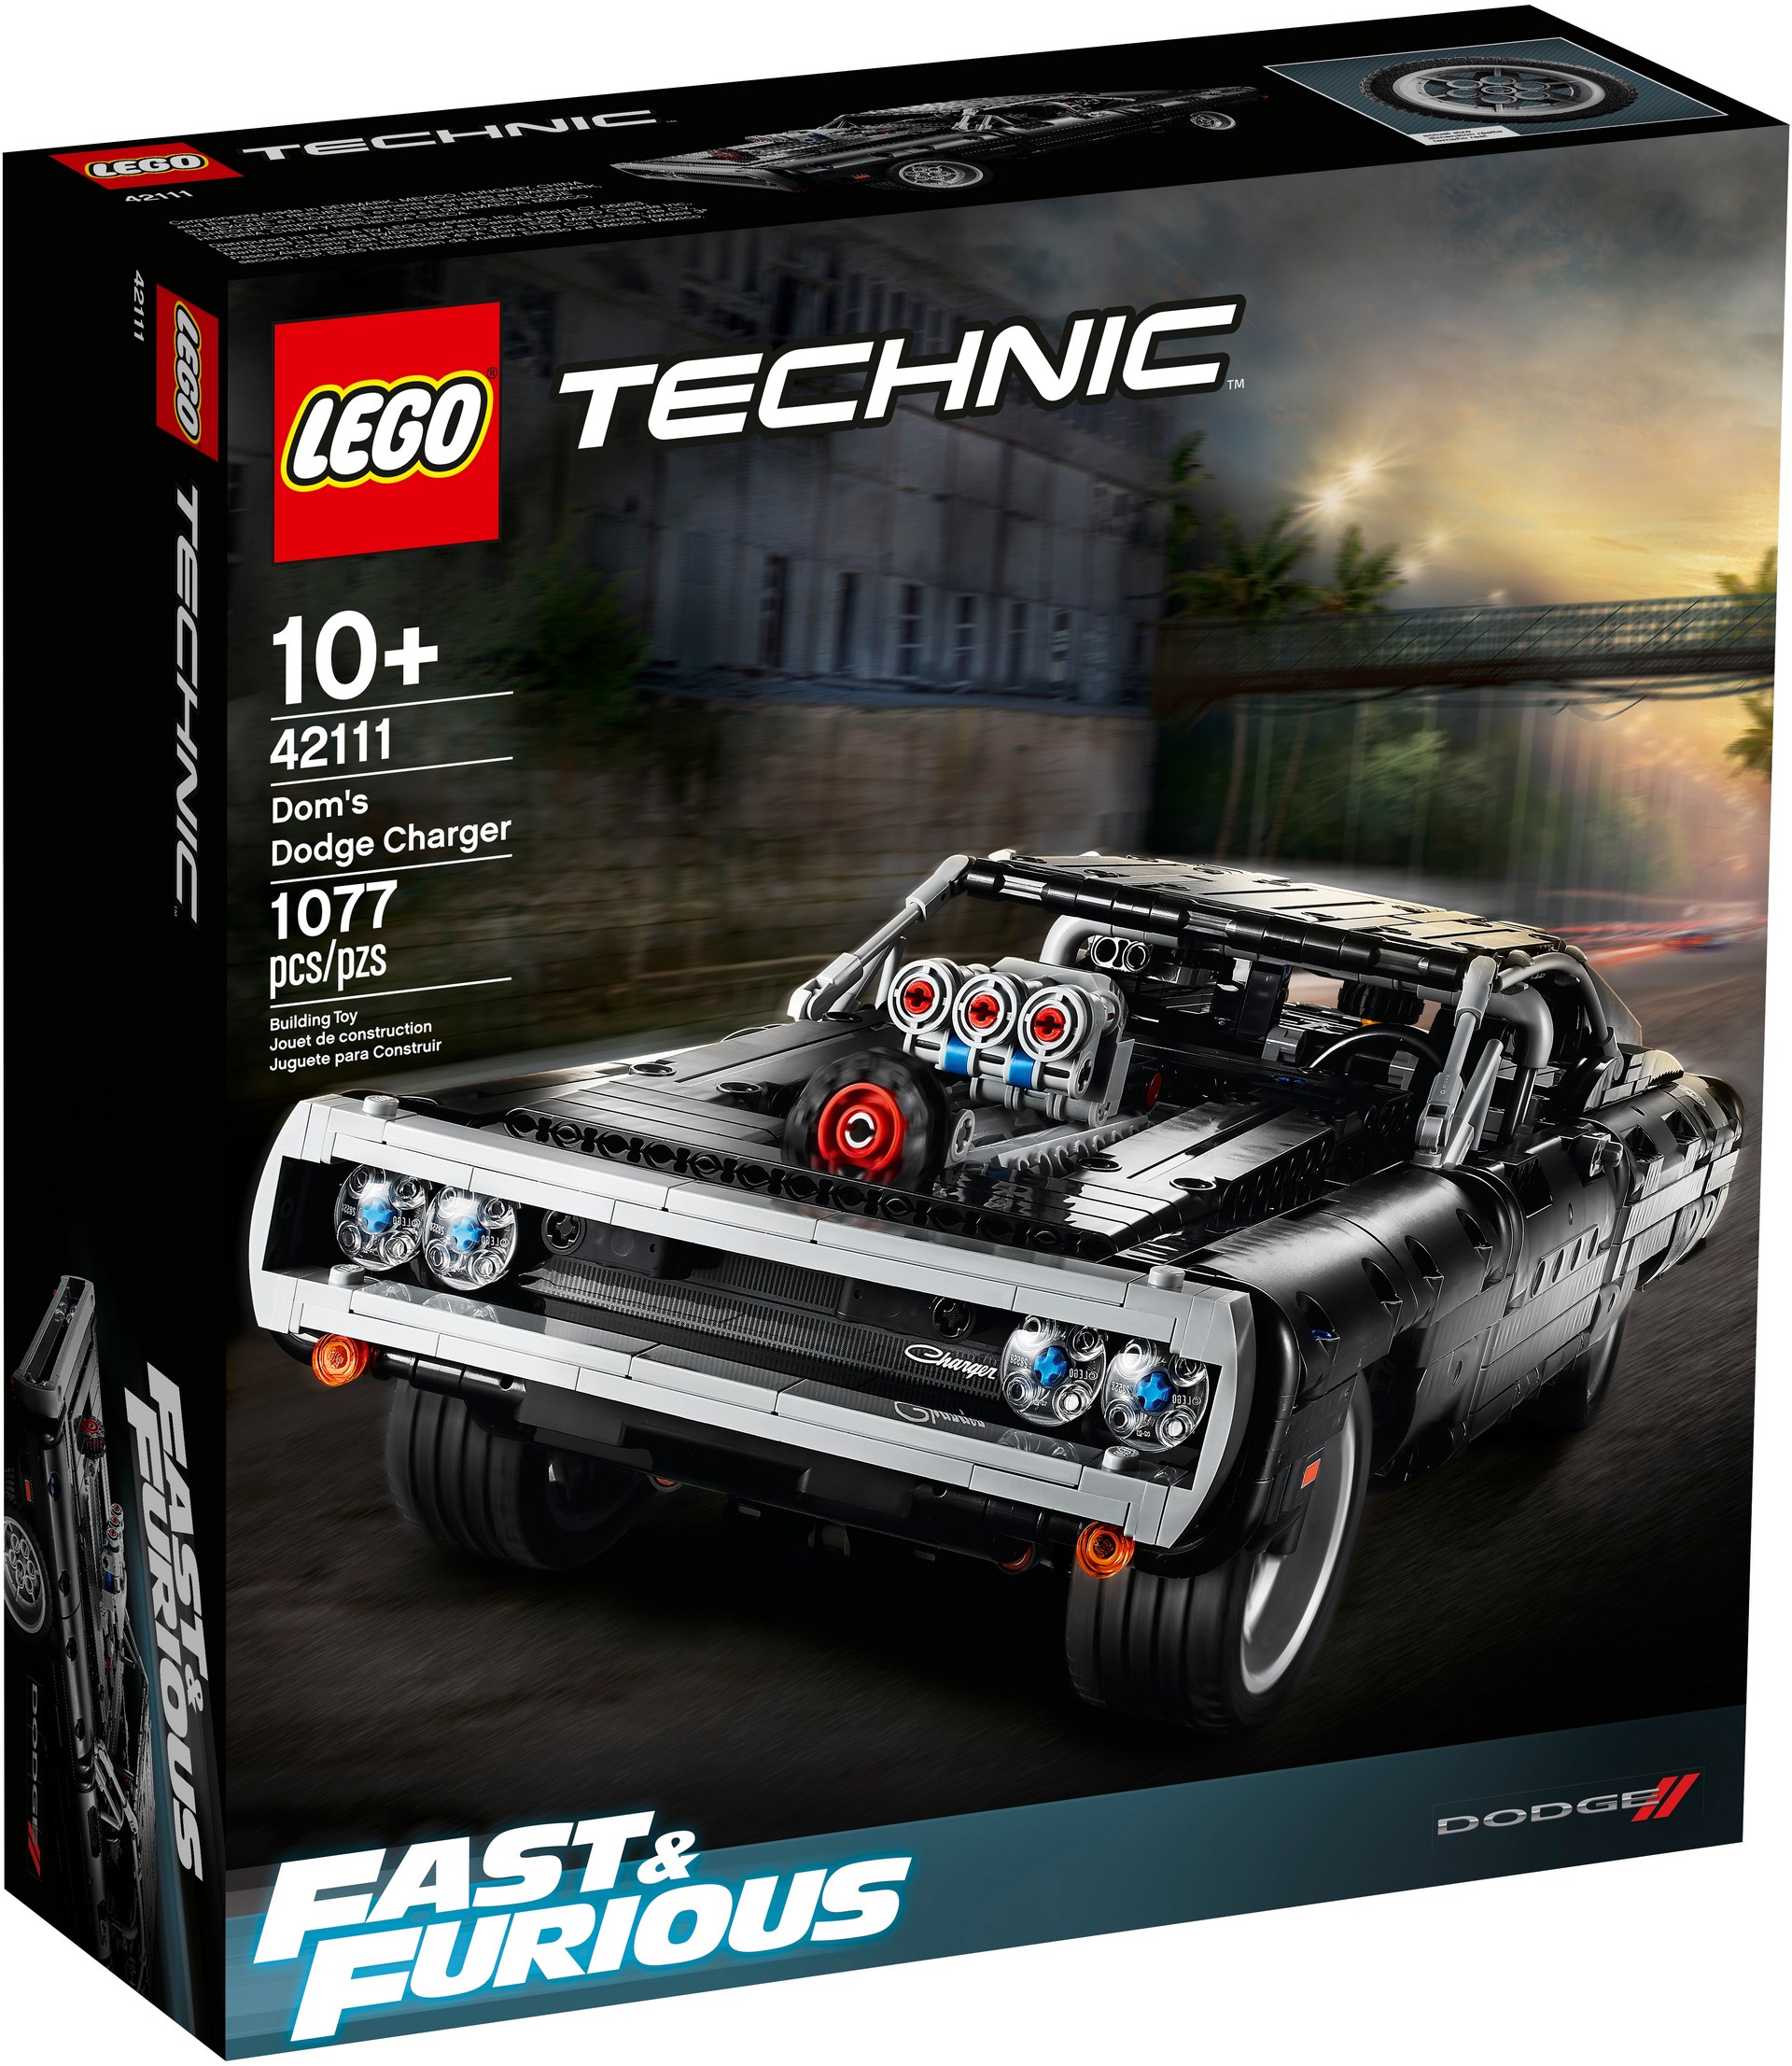 Dodge Charger do filme “Velocidade Furiosa” mostrado em Lego